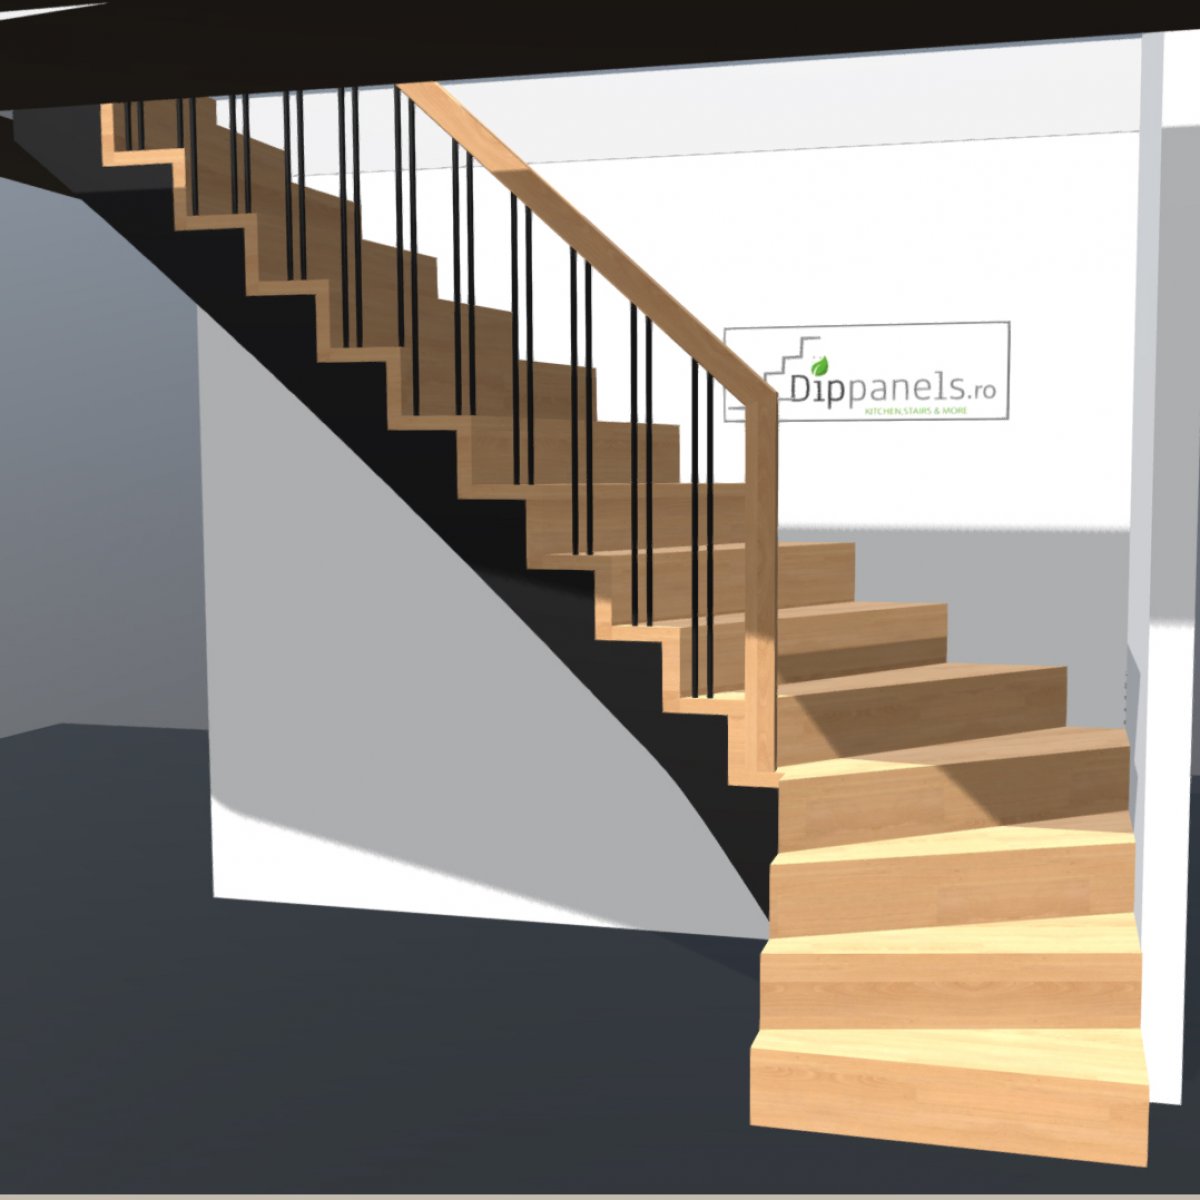 bottleneck Outdated silhouette Configurarea unei scari din lemn in cativa pasi simpli - Misiunea Casa